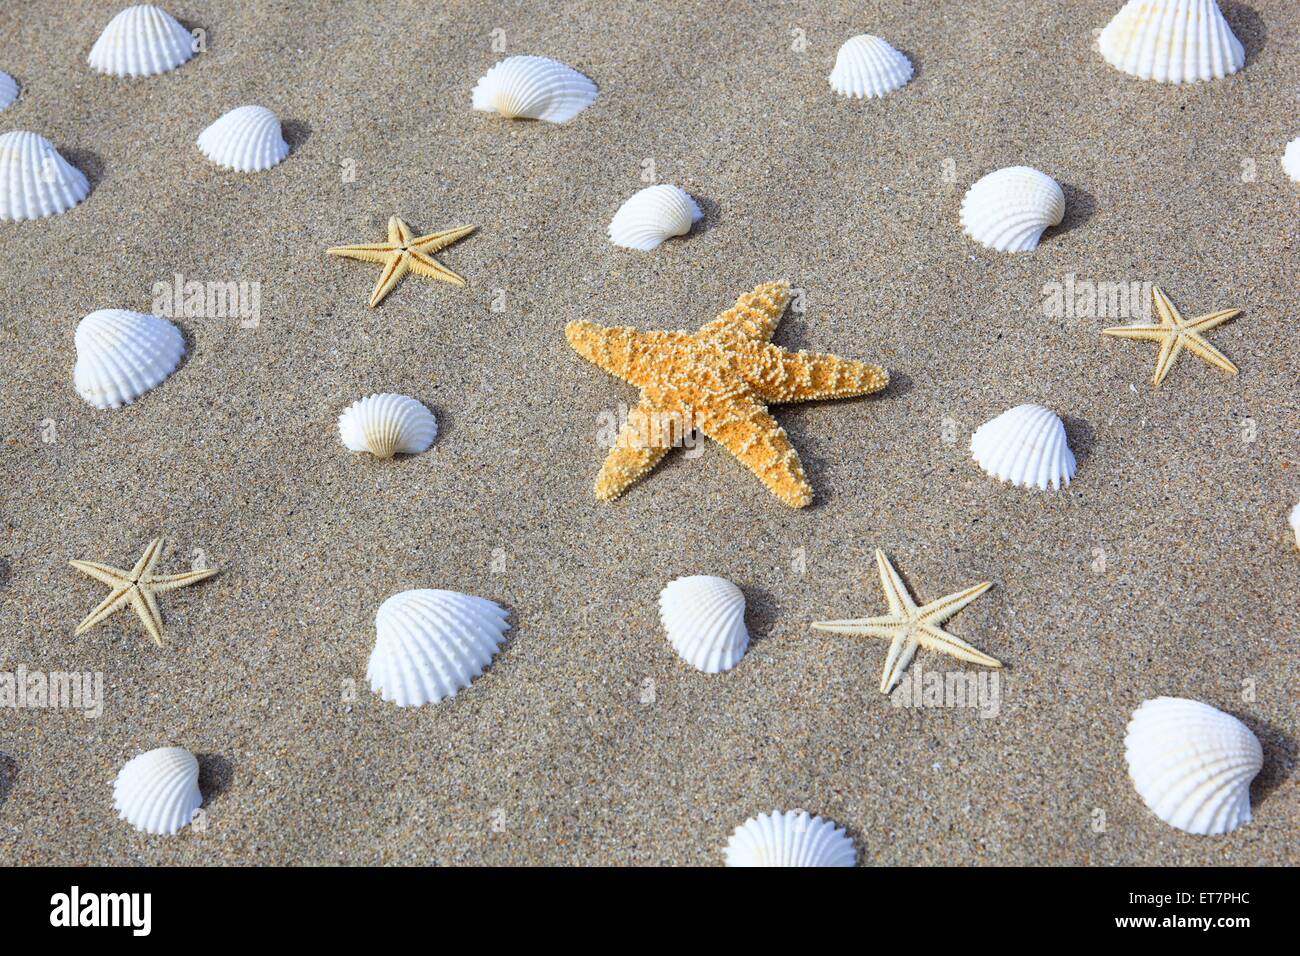 Seesterne Muscheln und im Sand, Grossbritannien Schottland | seastars, conques et sur une plage de sable, Royaume-Uni, Ecosse Banque D'Images